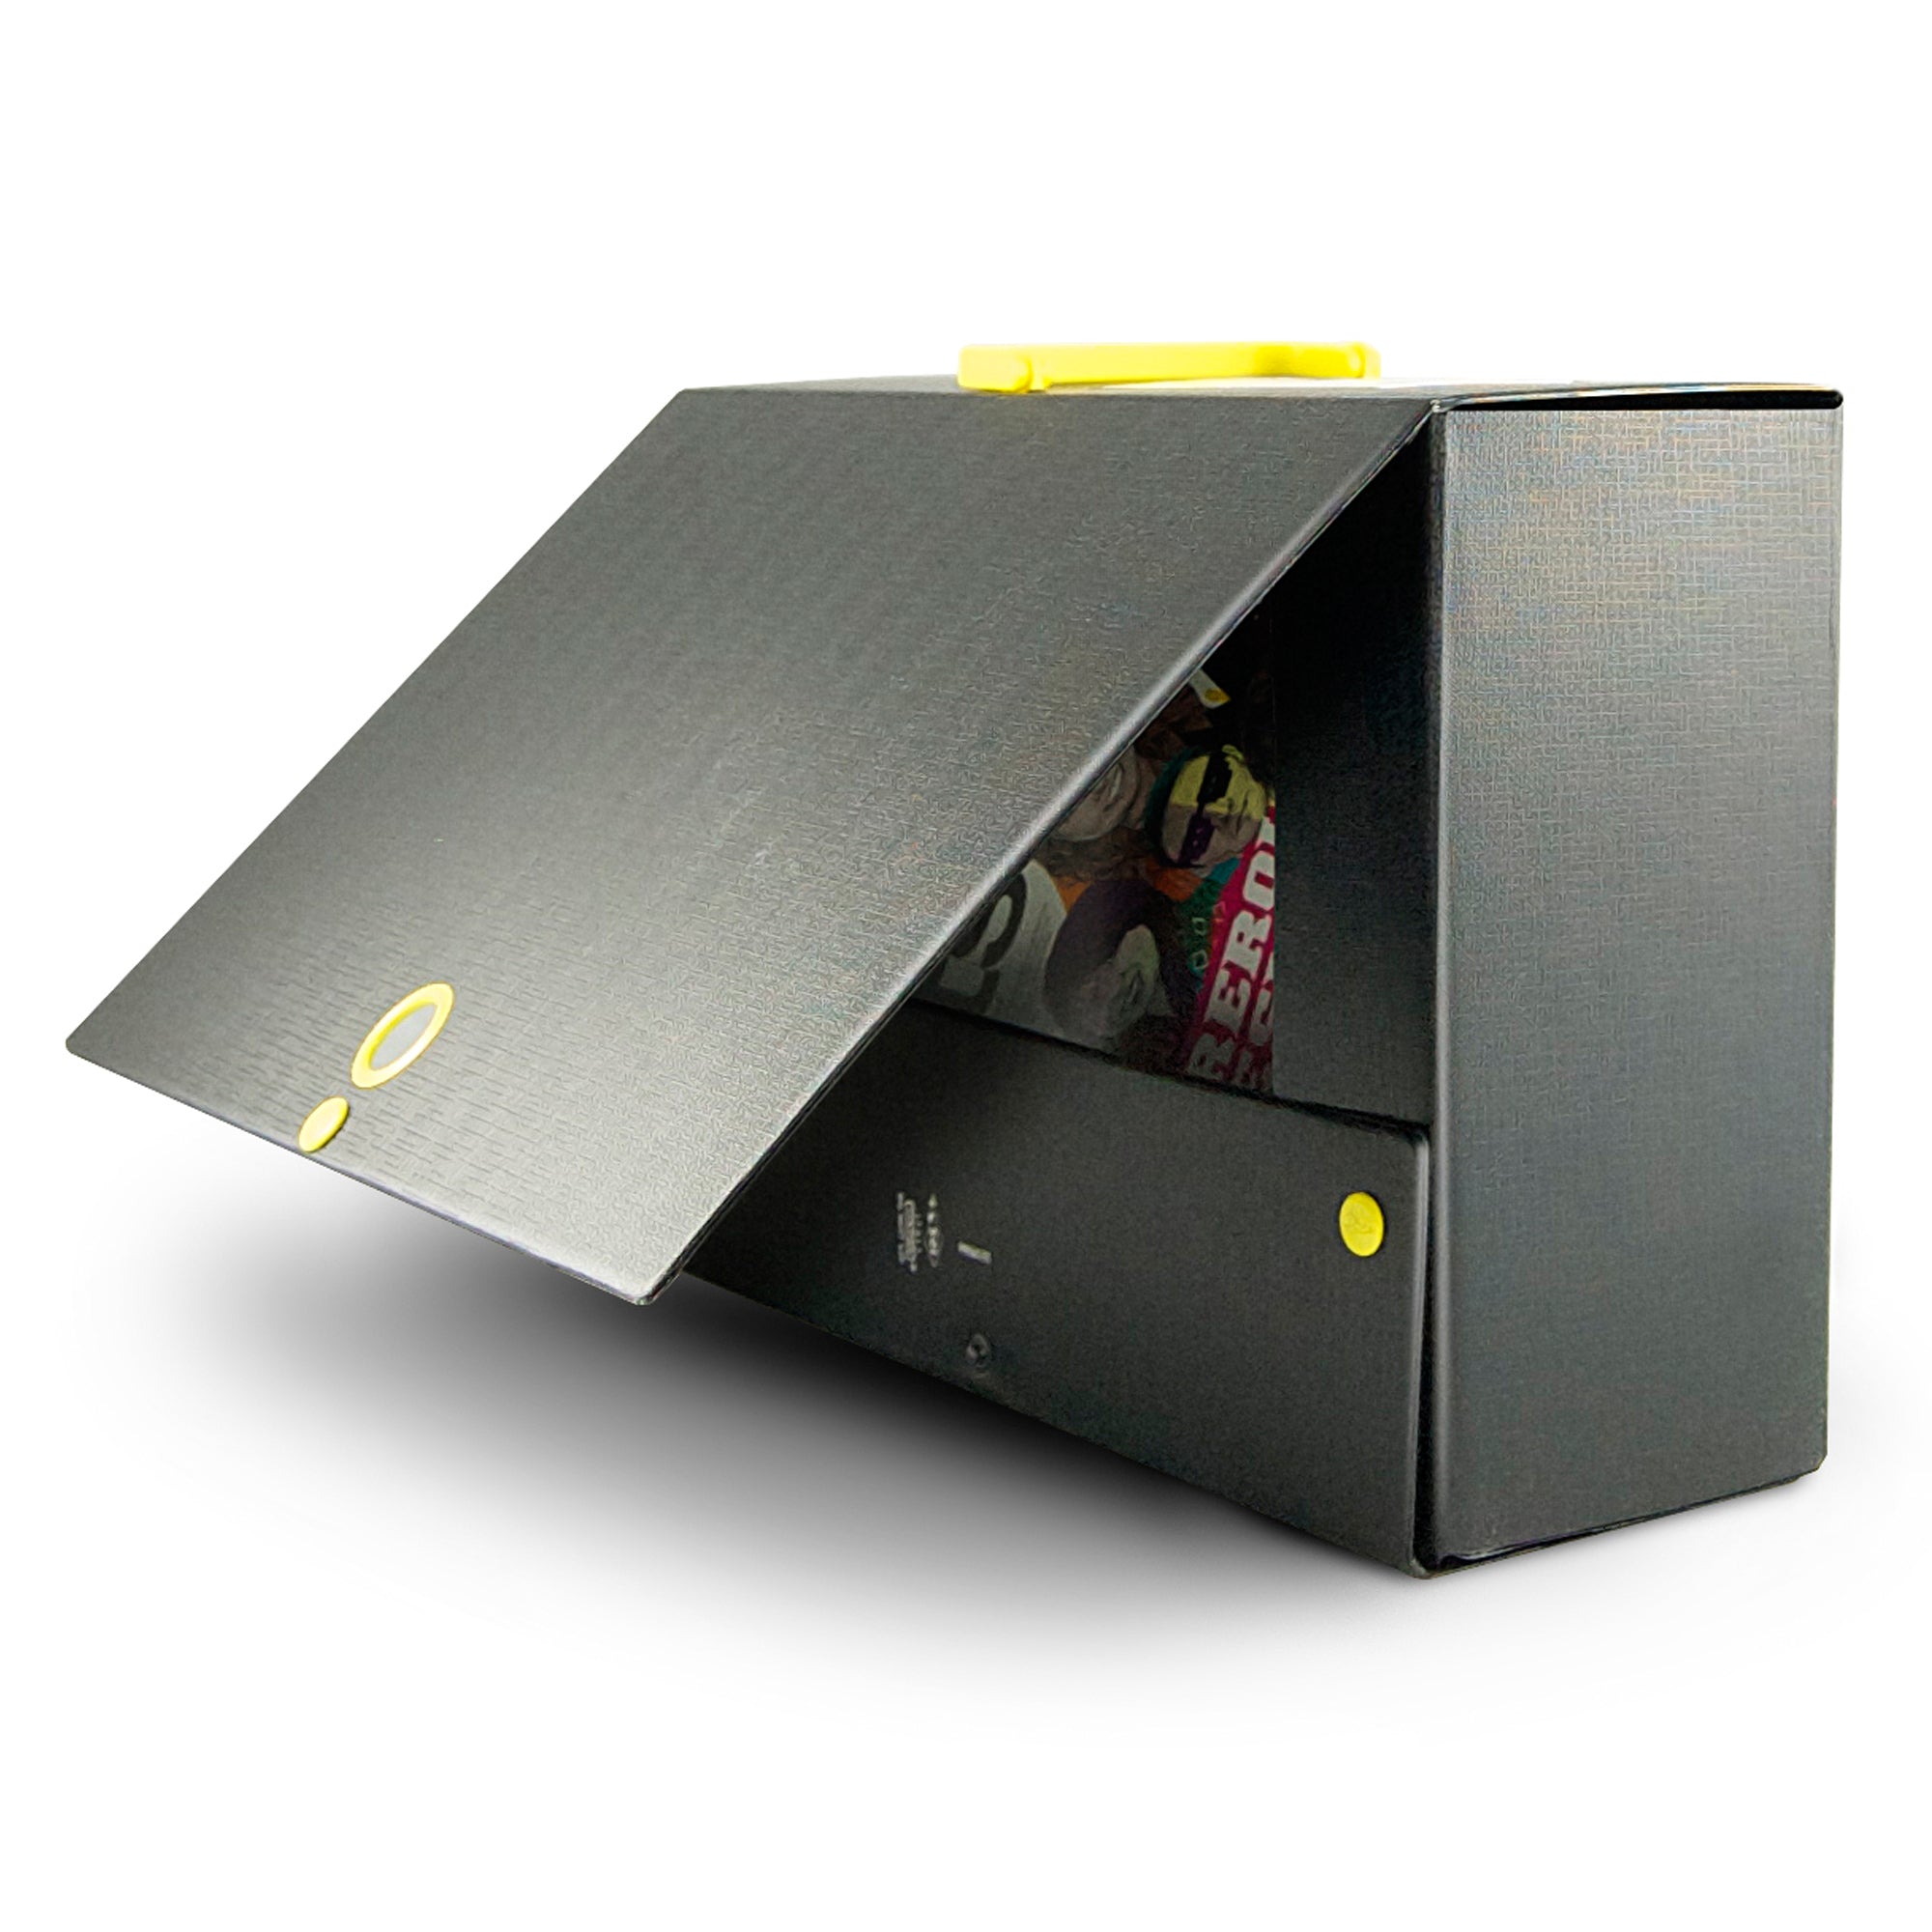 sei-rota-scatola-archivio-big-next-160-nero-giallo-25x35cm-dorso-16cm